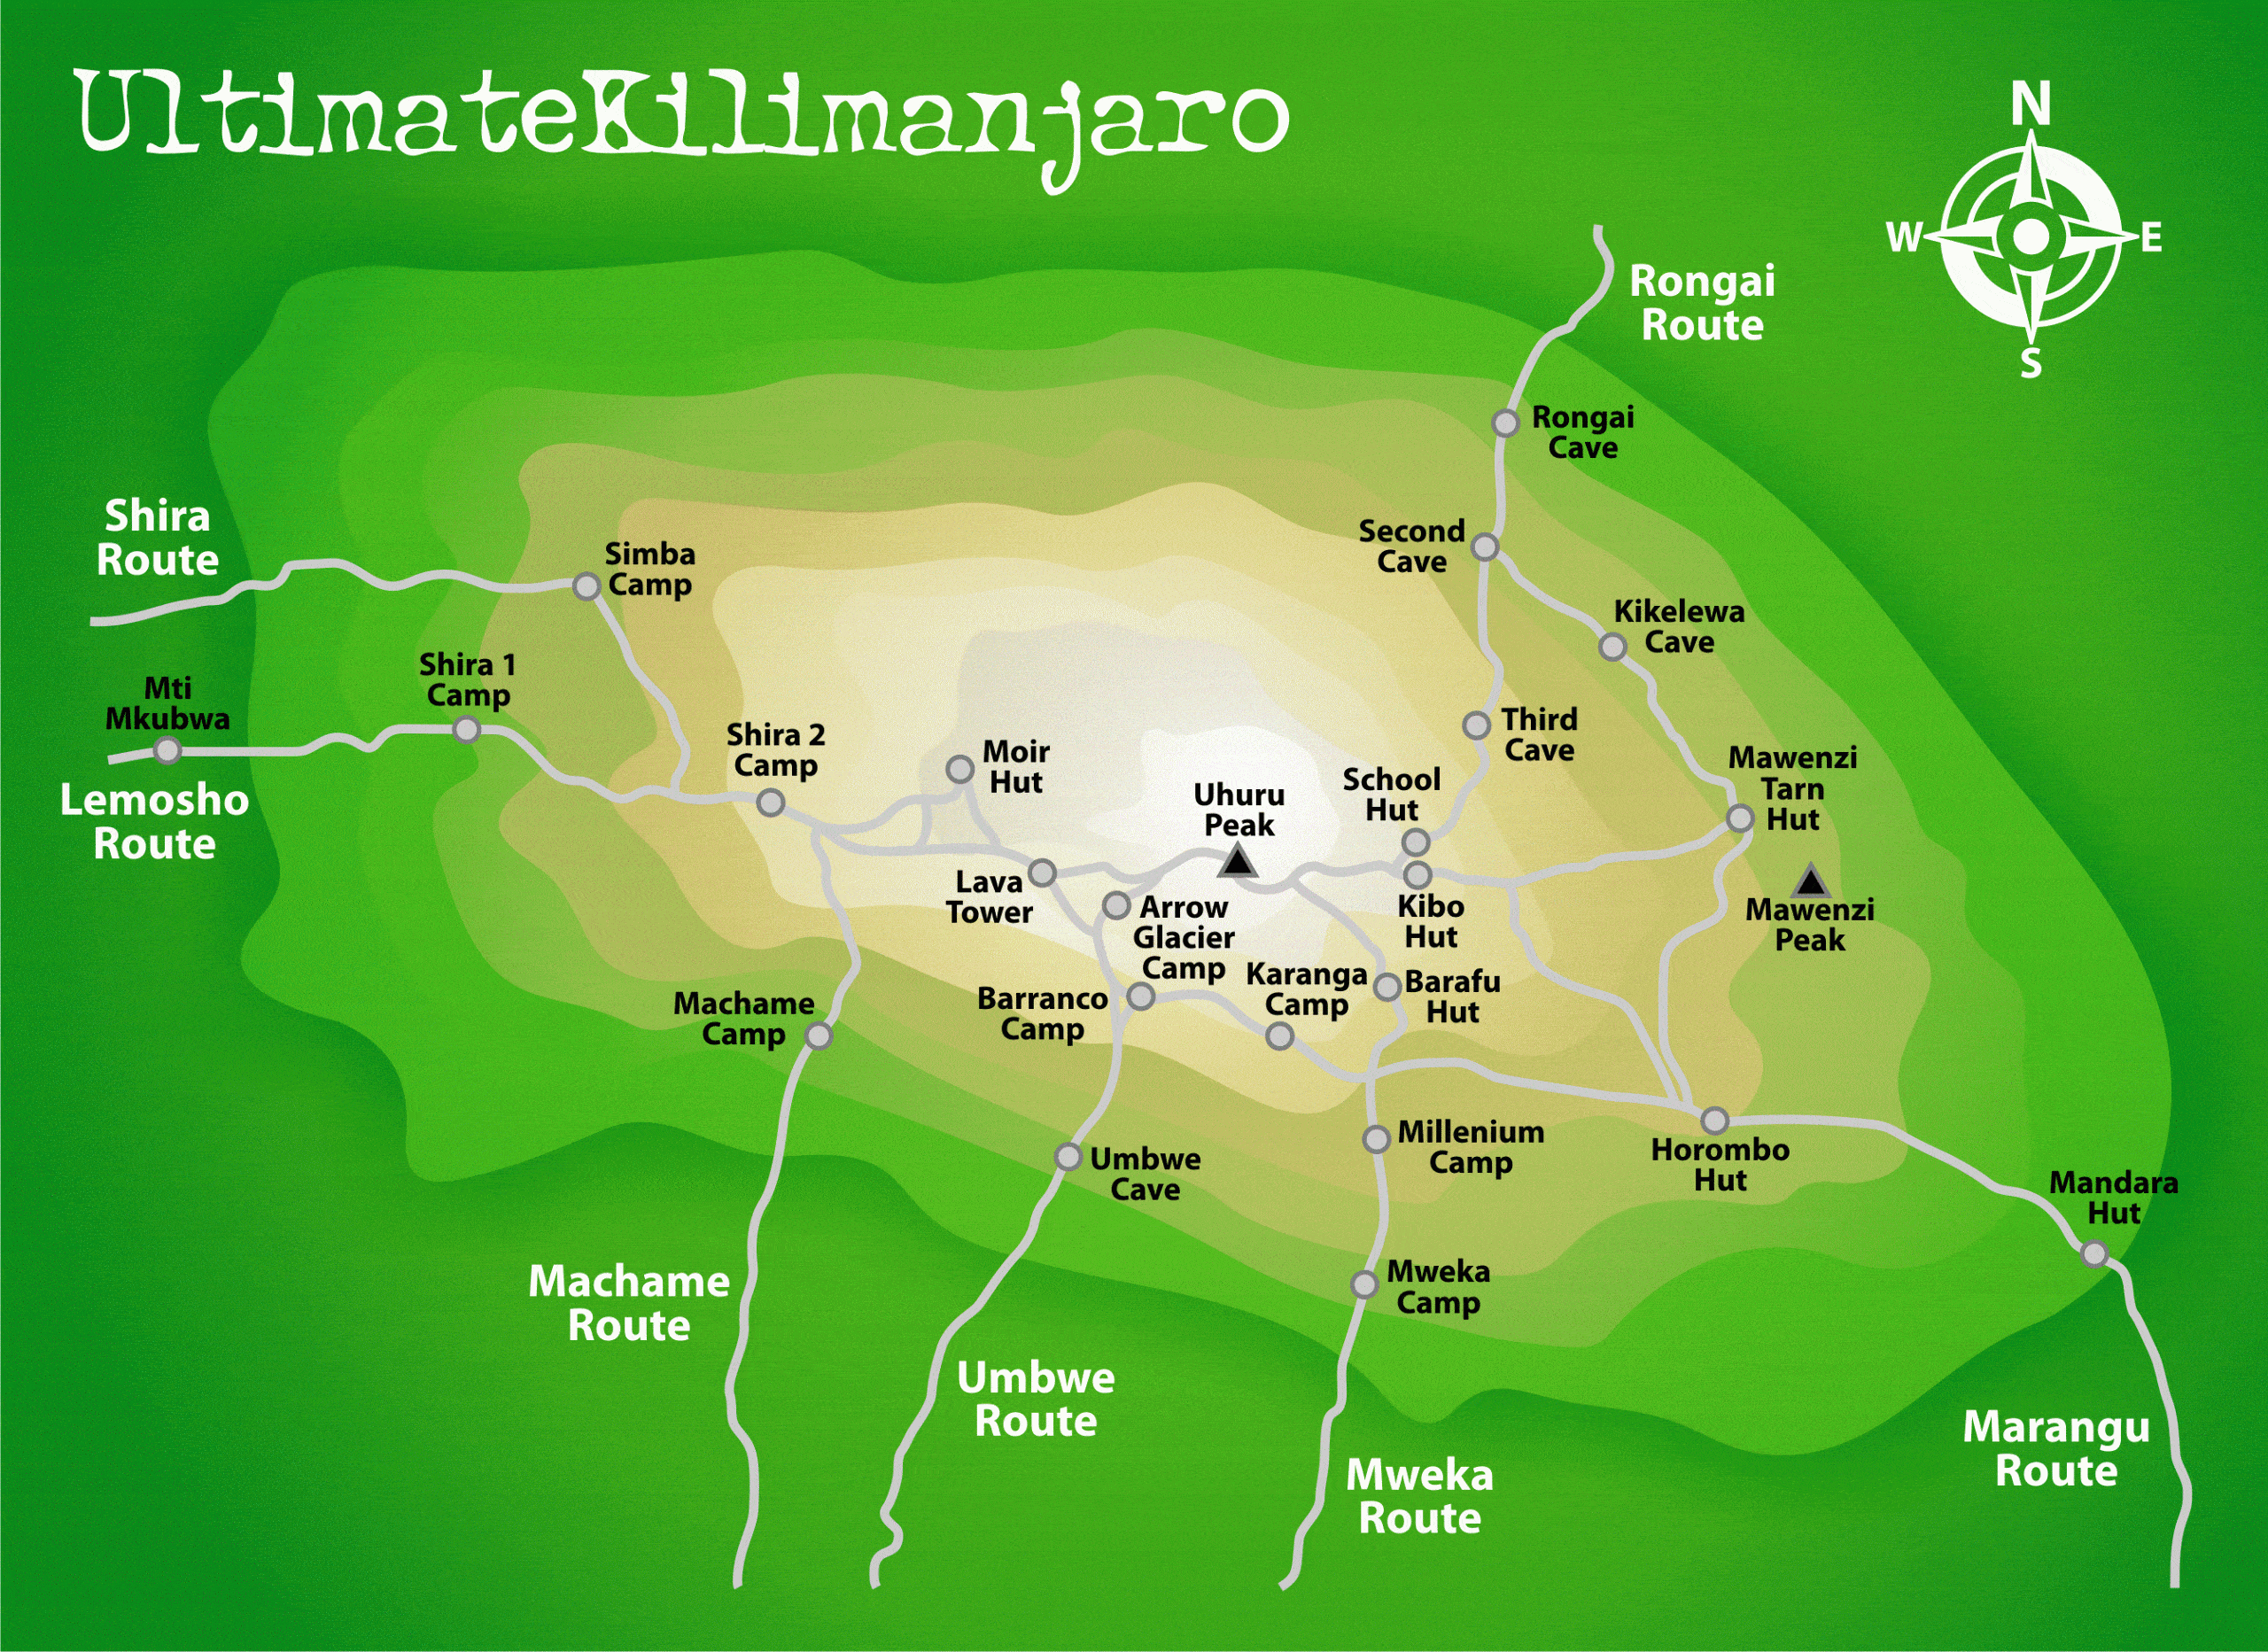 Kilimanjaro routes summit